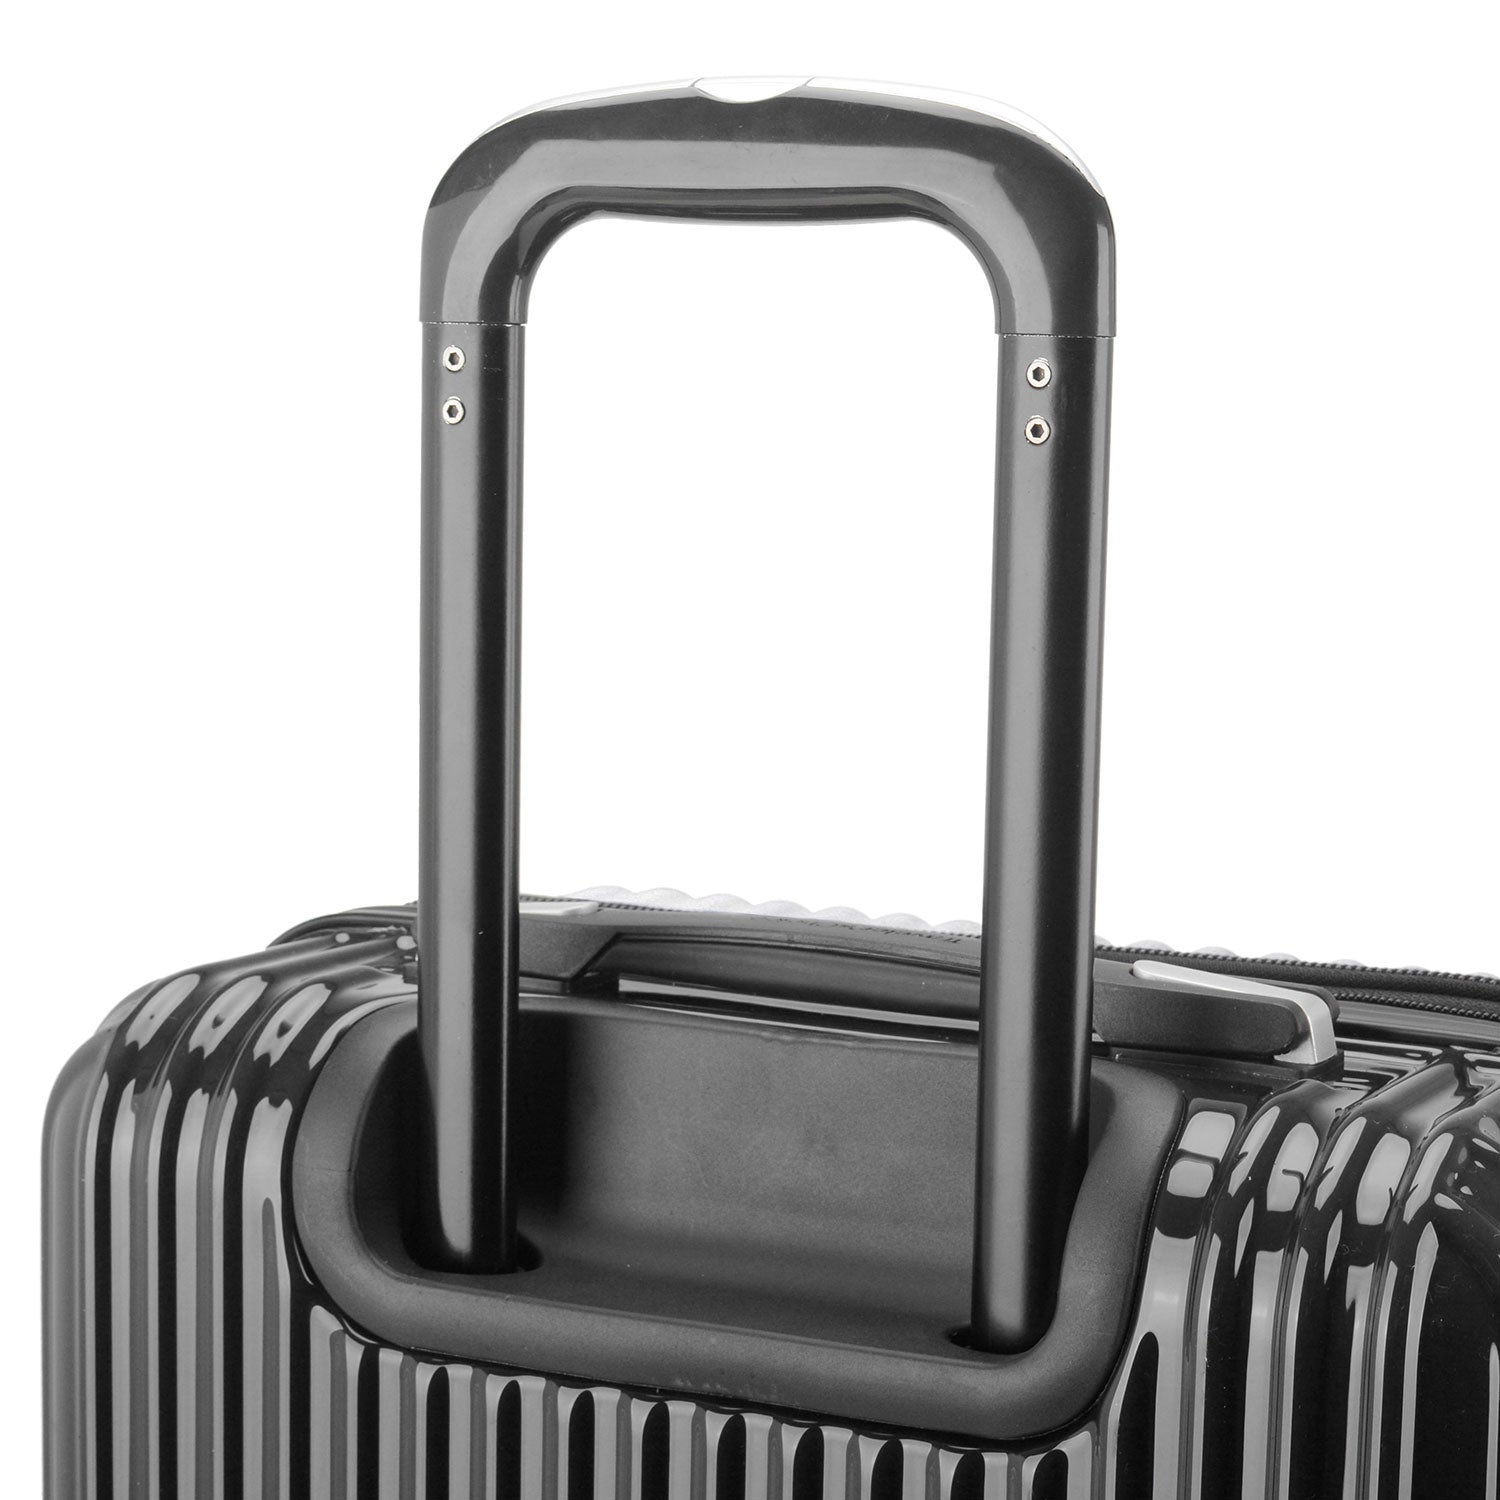 Jericho 3-Piece Hardside Spinner Luggage Set